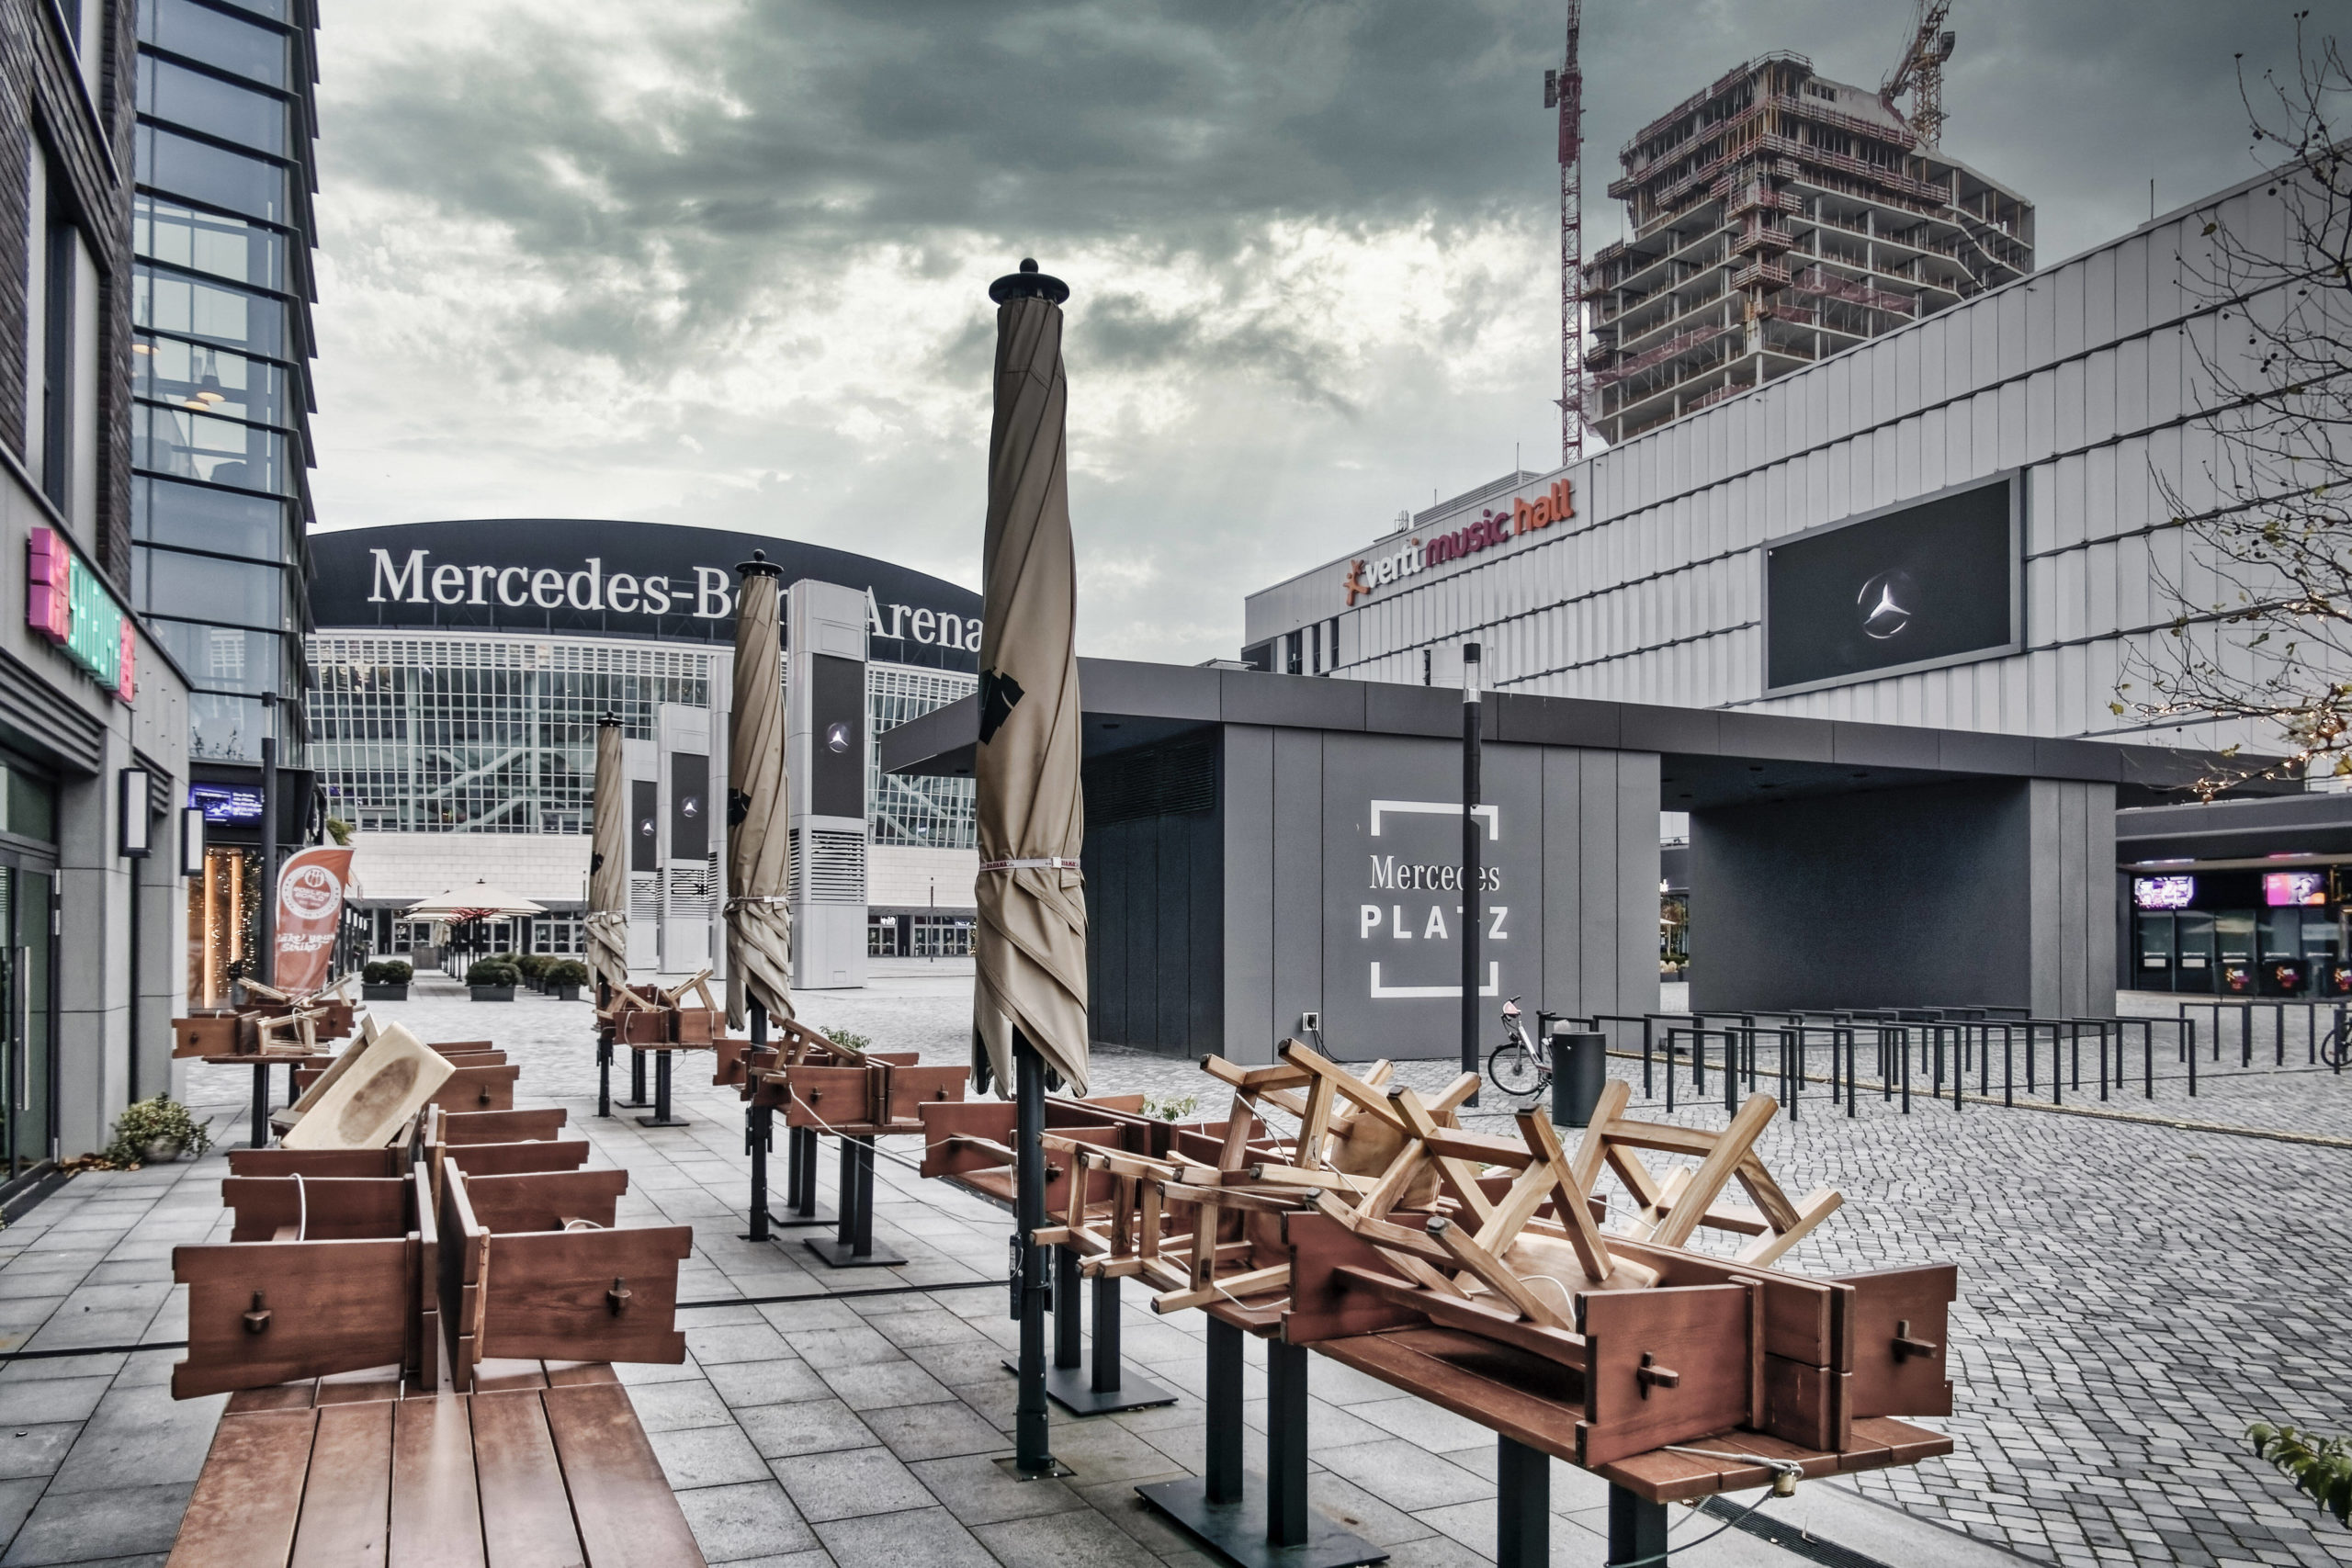 Wenig einladend: Der Mercedes-Platz hat die Aufenthaltsqualität eines videoüberwachten Raststätten-Parkplatzes. Foto: Imago/Travel-Stock-Image